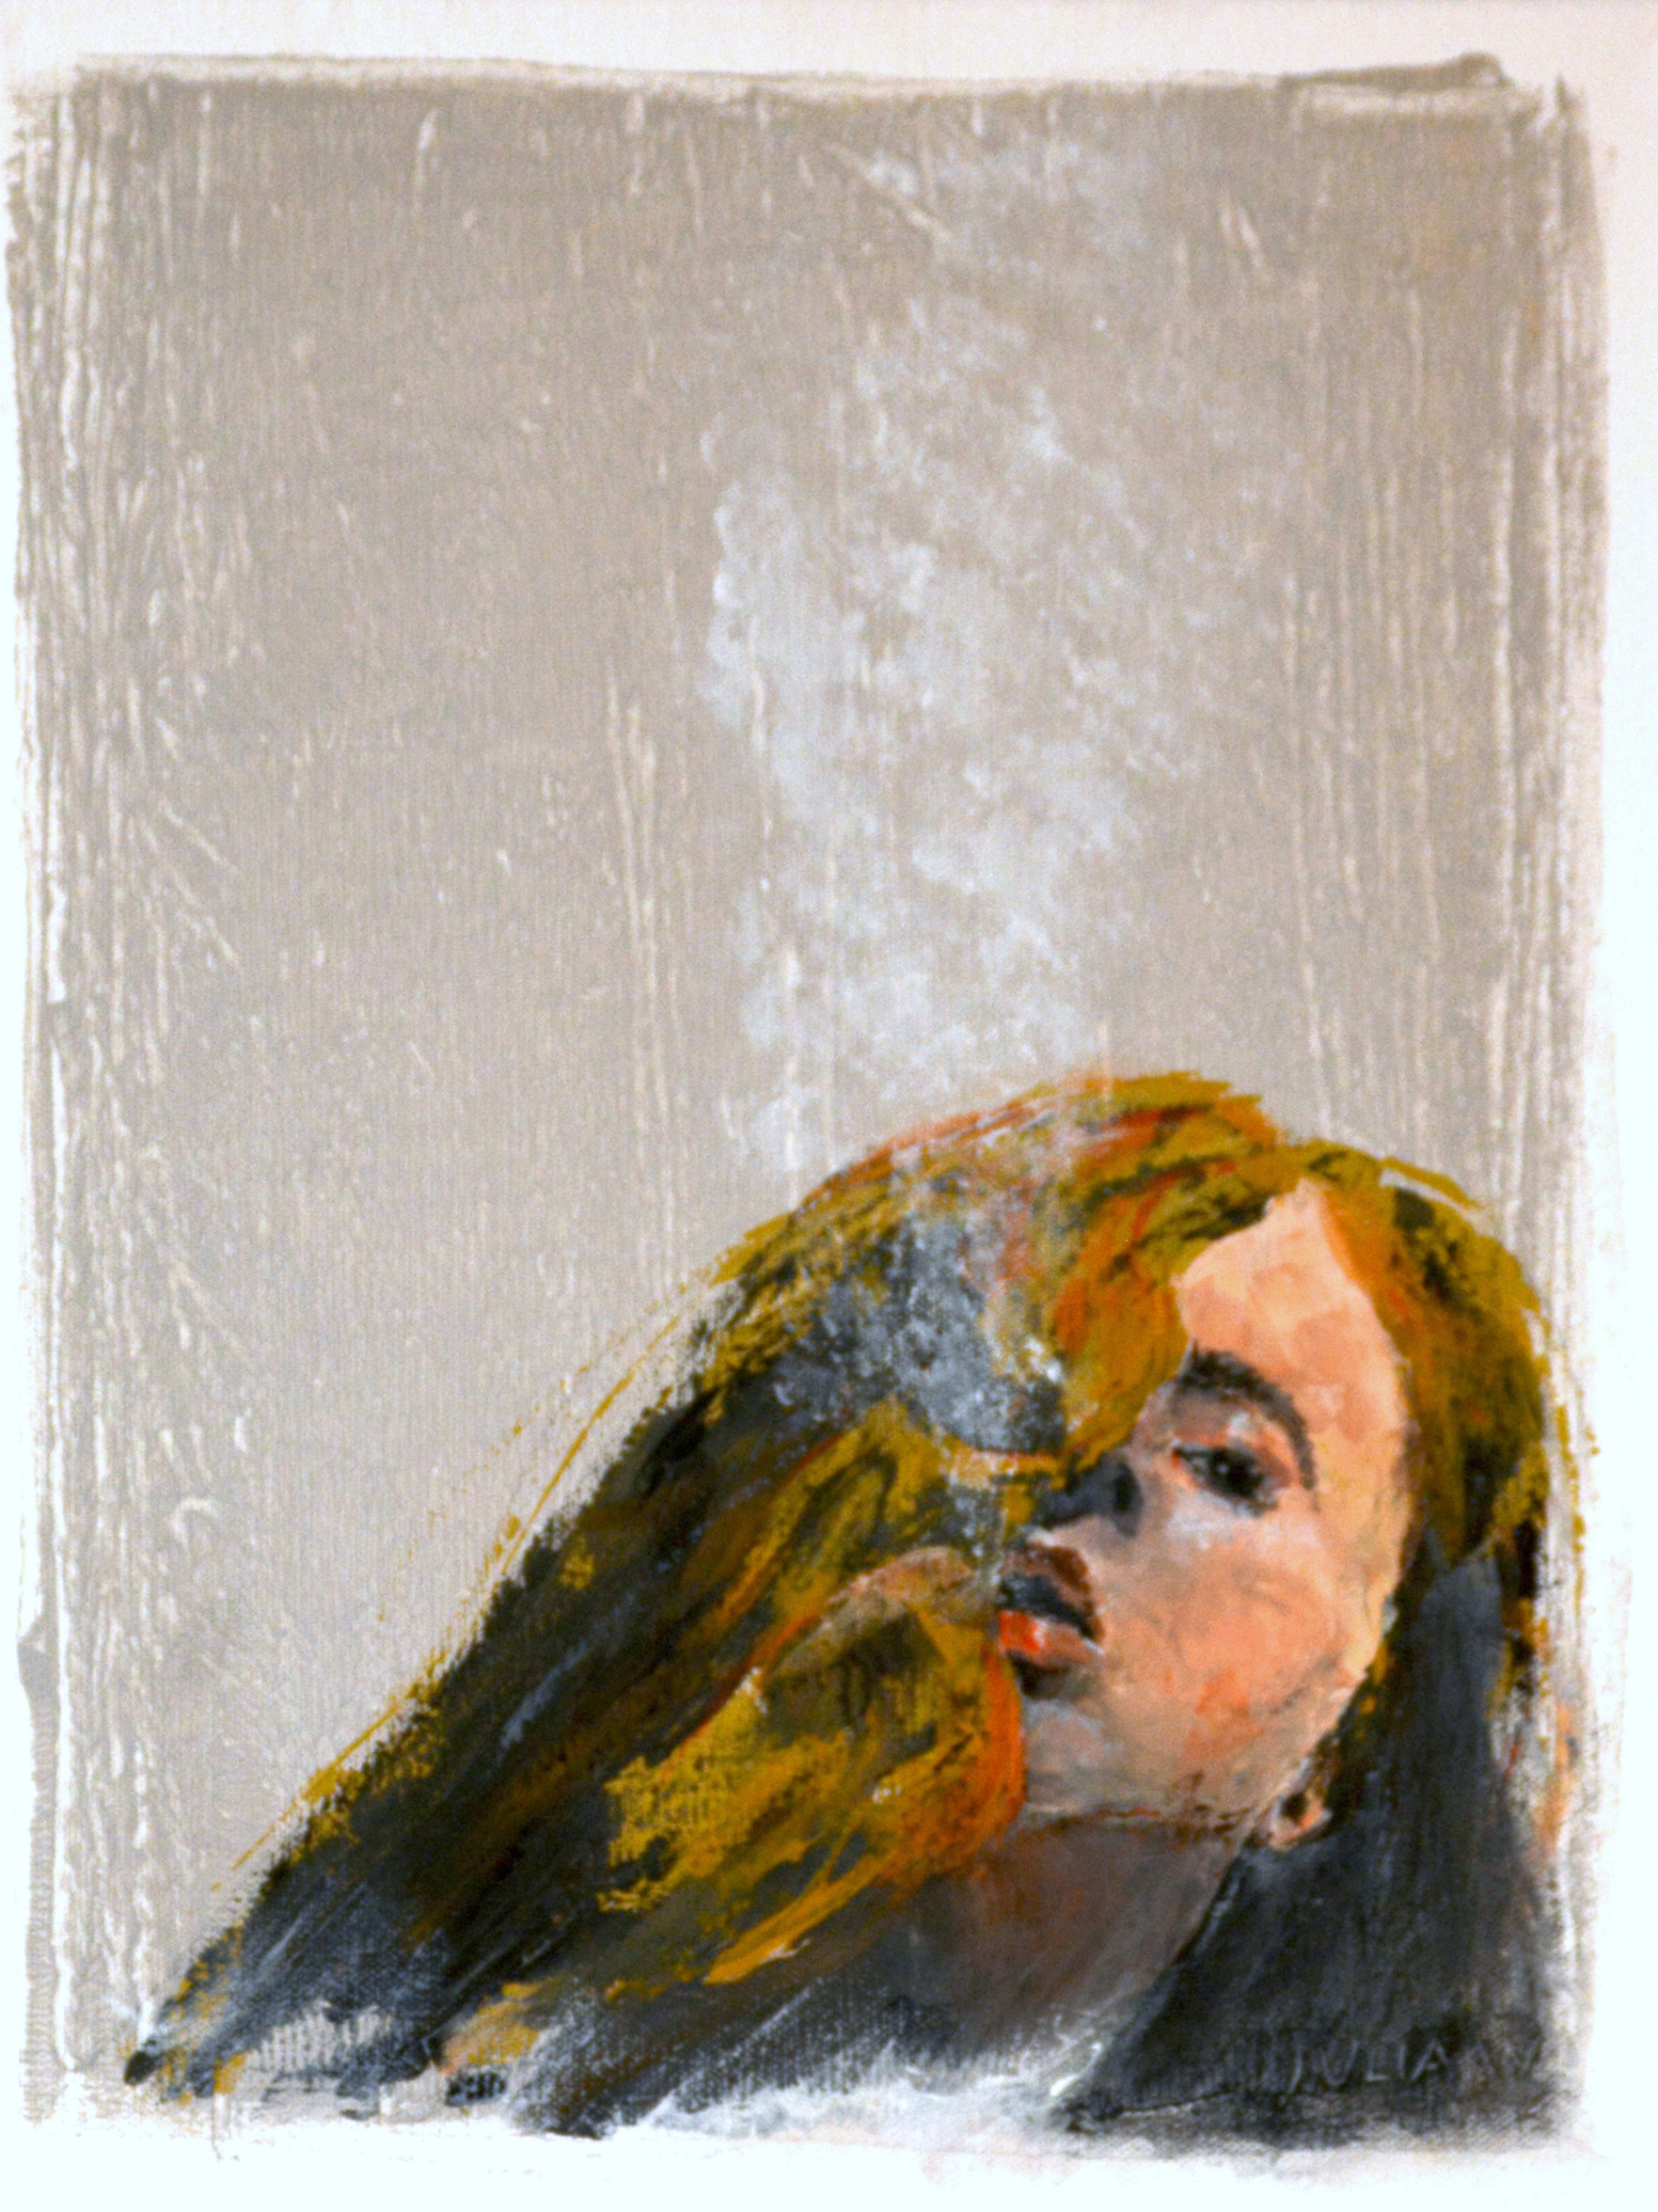 TROTZ - Acryl auf Leinwand - 30x40cm - Abstrahiert zeigt dieses Kunstwerk eine junge, mit goldenen Haaren. Mit diesem Bild hat mein "Kunst online verkaufen"-Projekt begonnen.